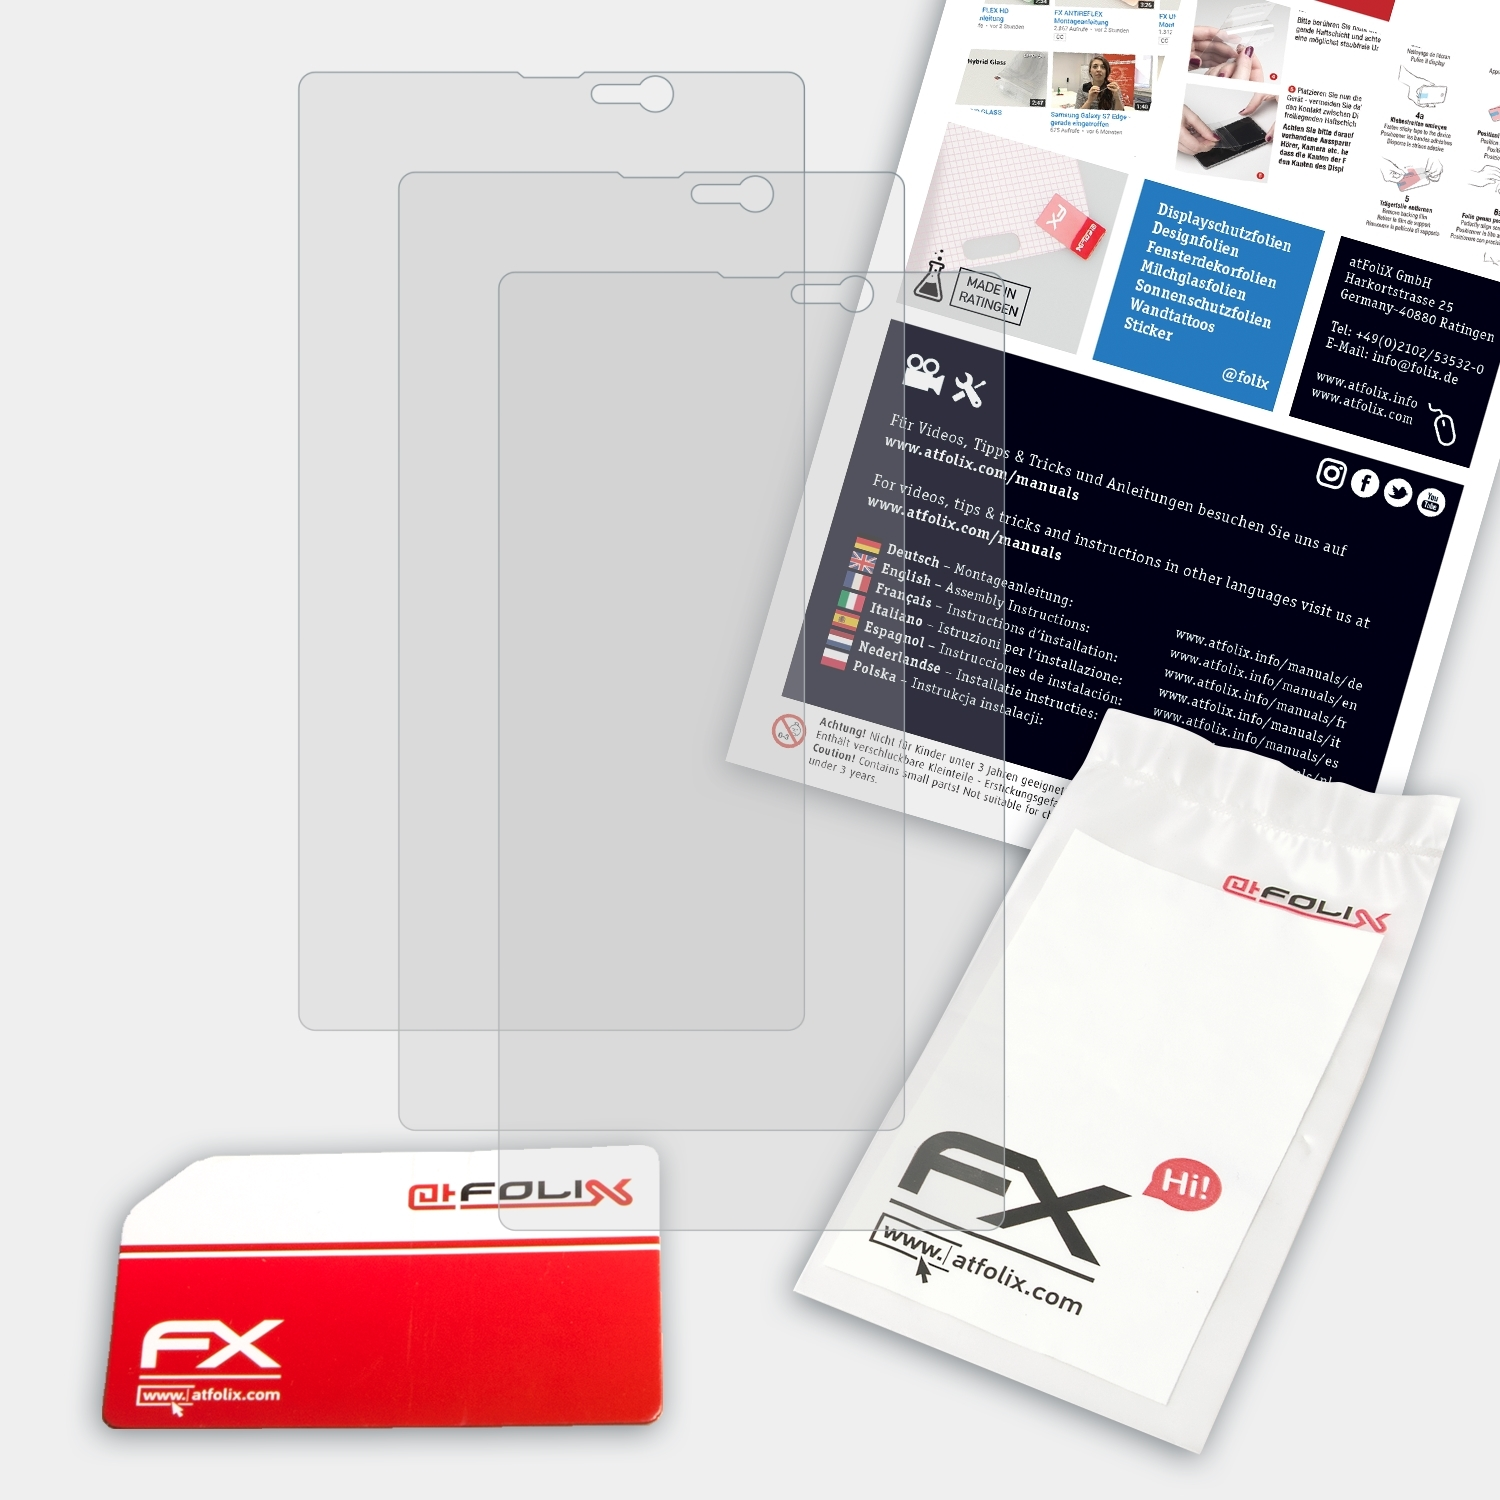 ATFOLIX 3x 820) Nokia FX-Antireflex Lumia Displayschutz(für